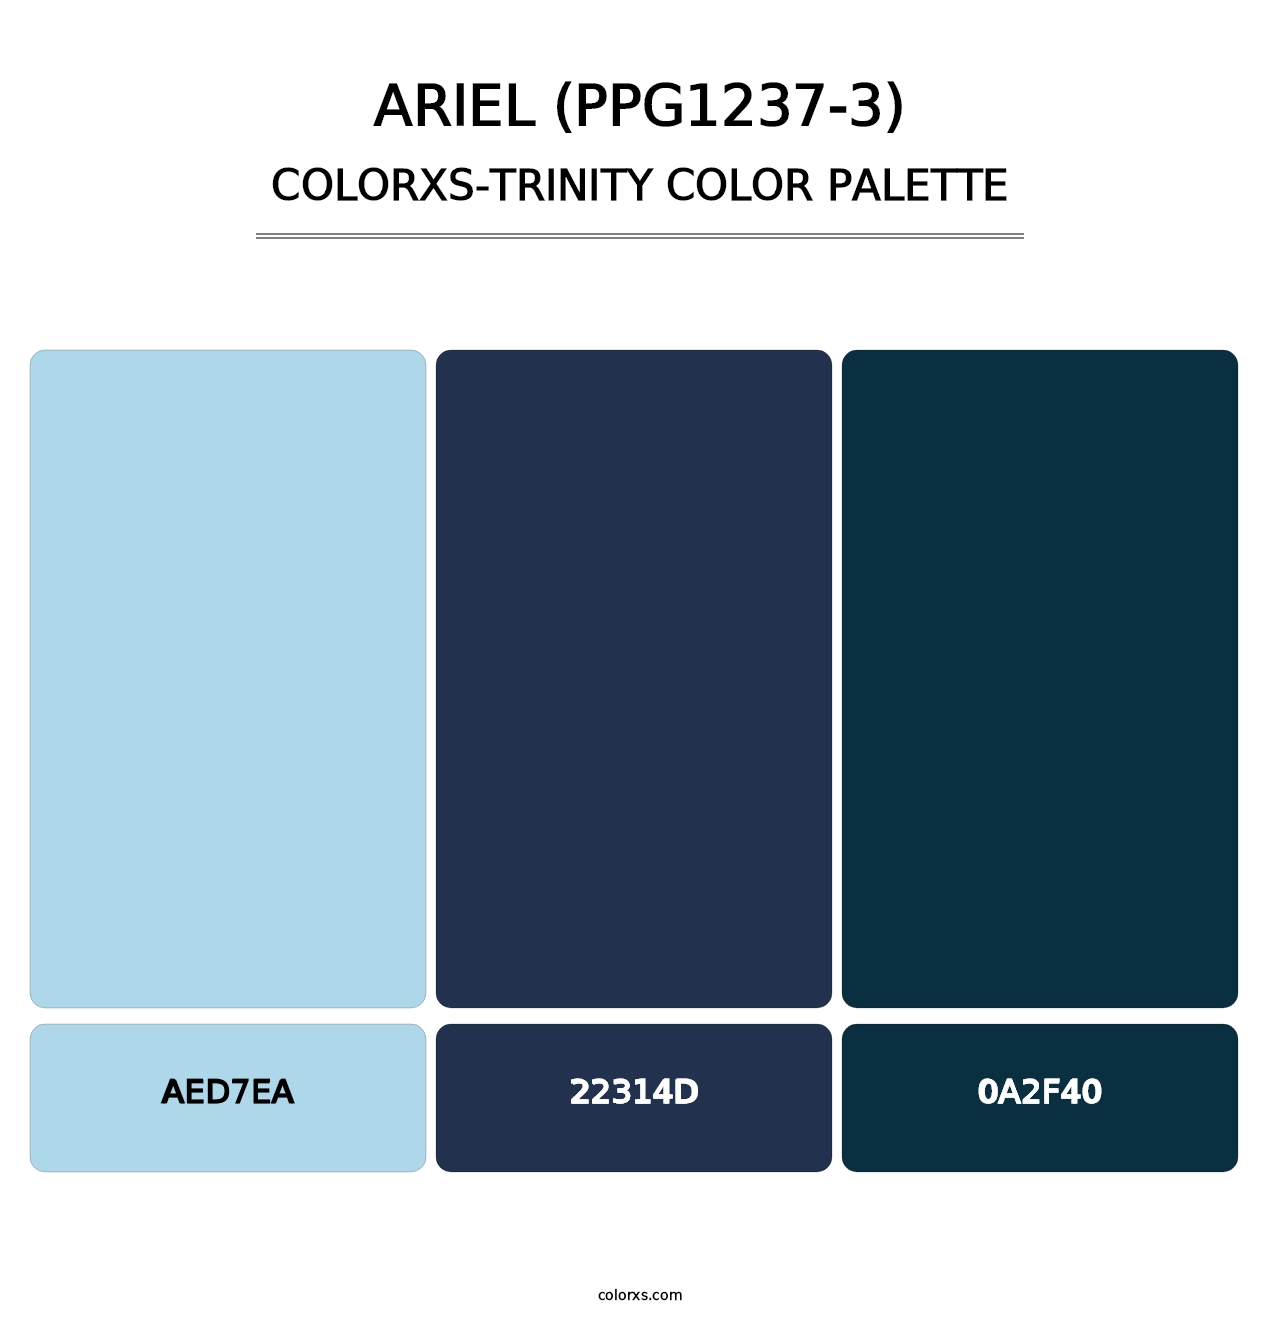 Ariel (PPG1237-3) - Colorxs Trinity Palette